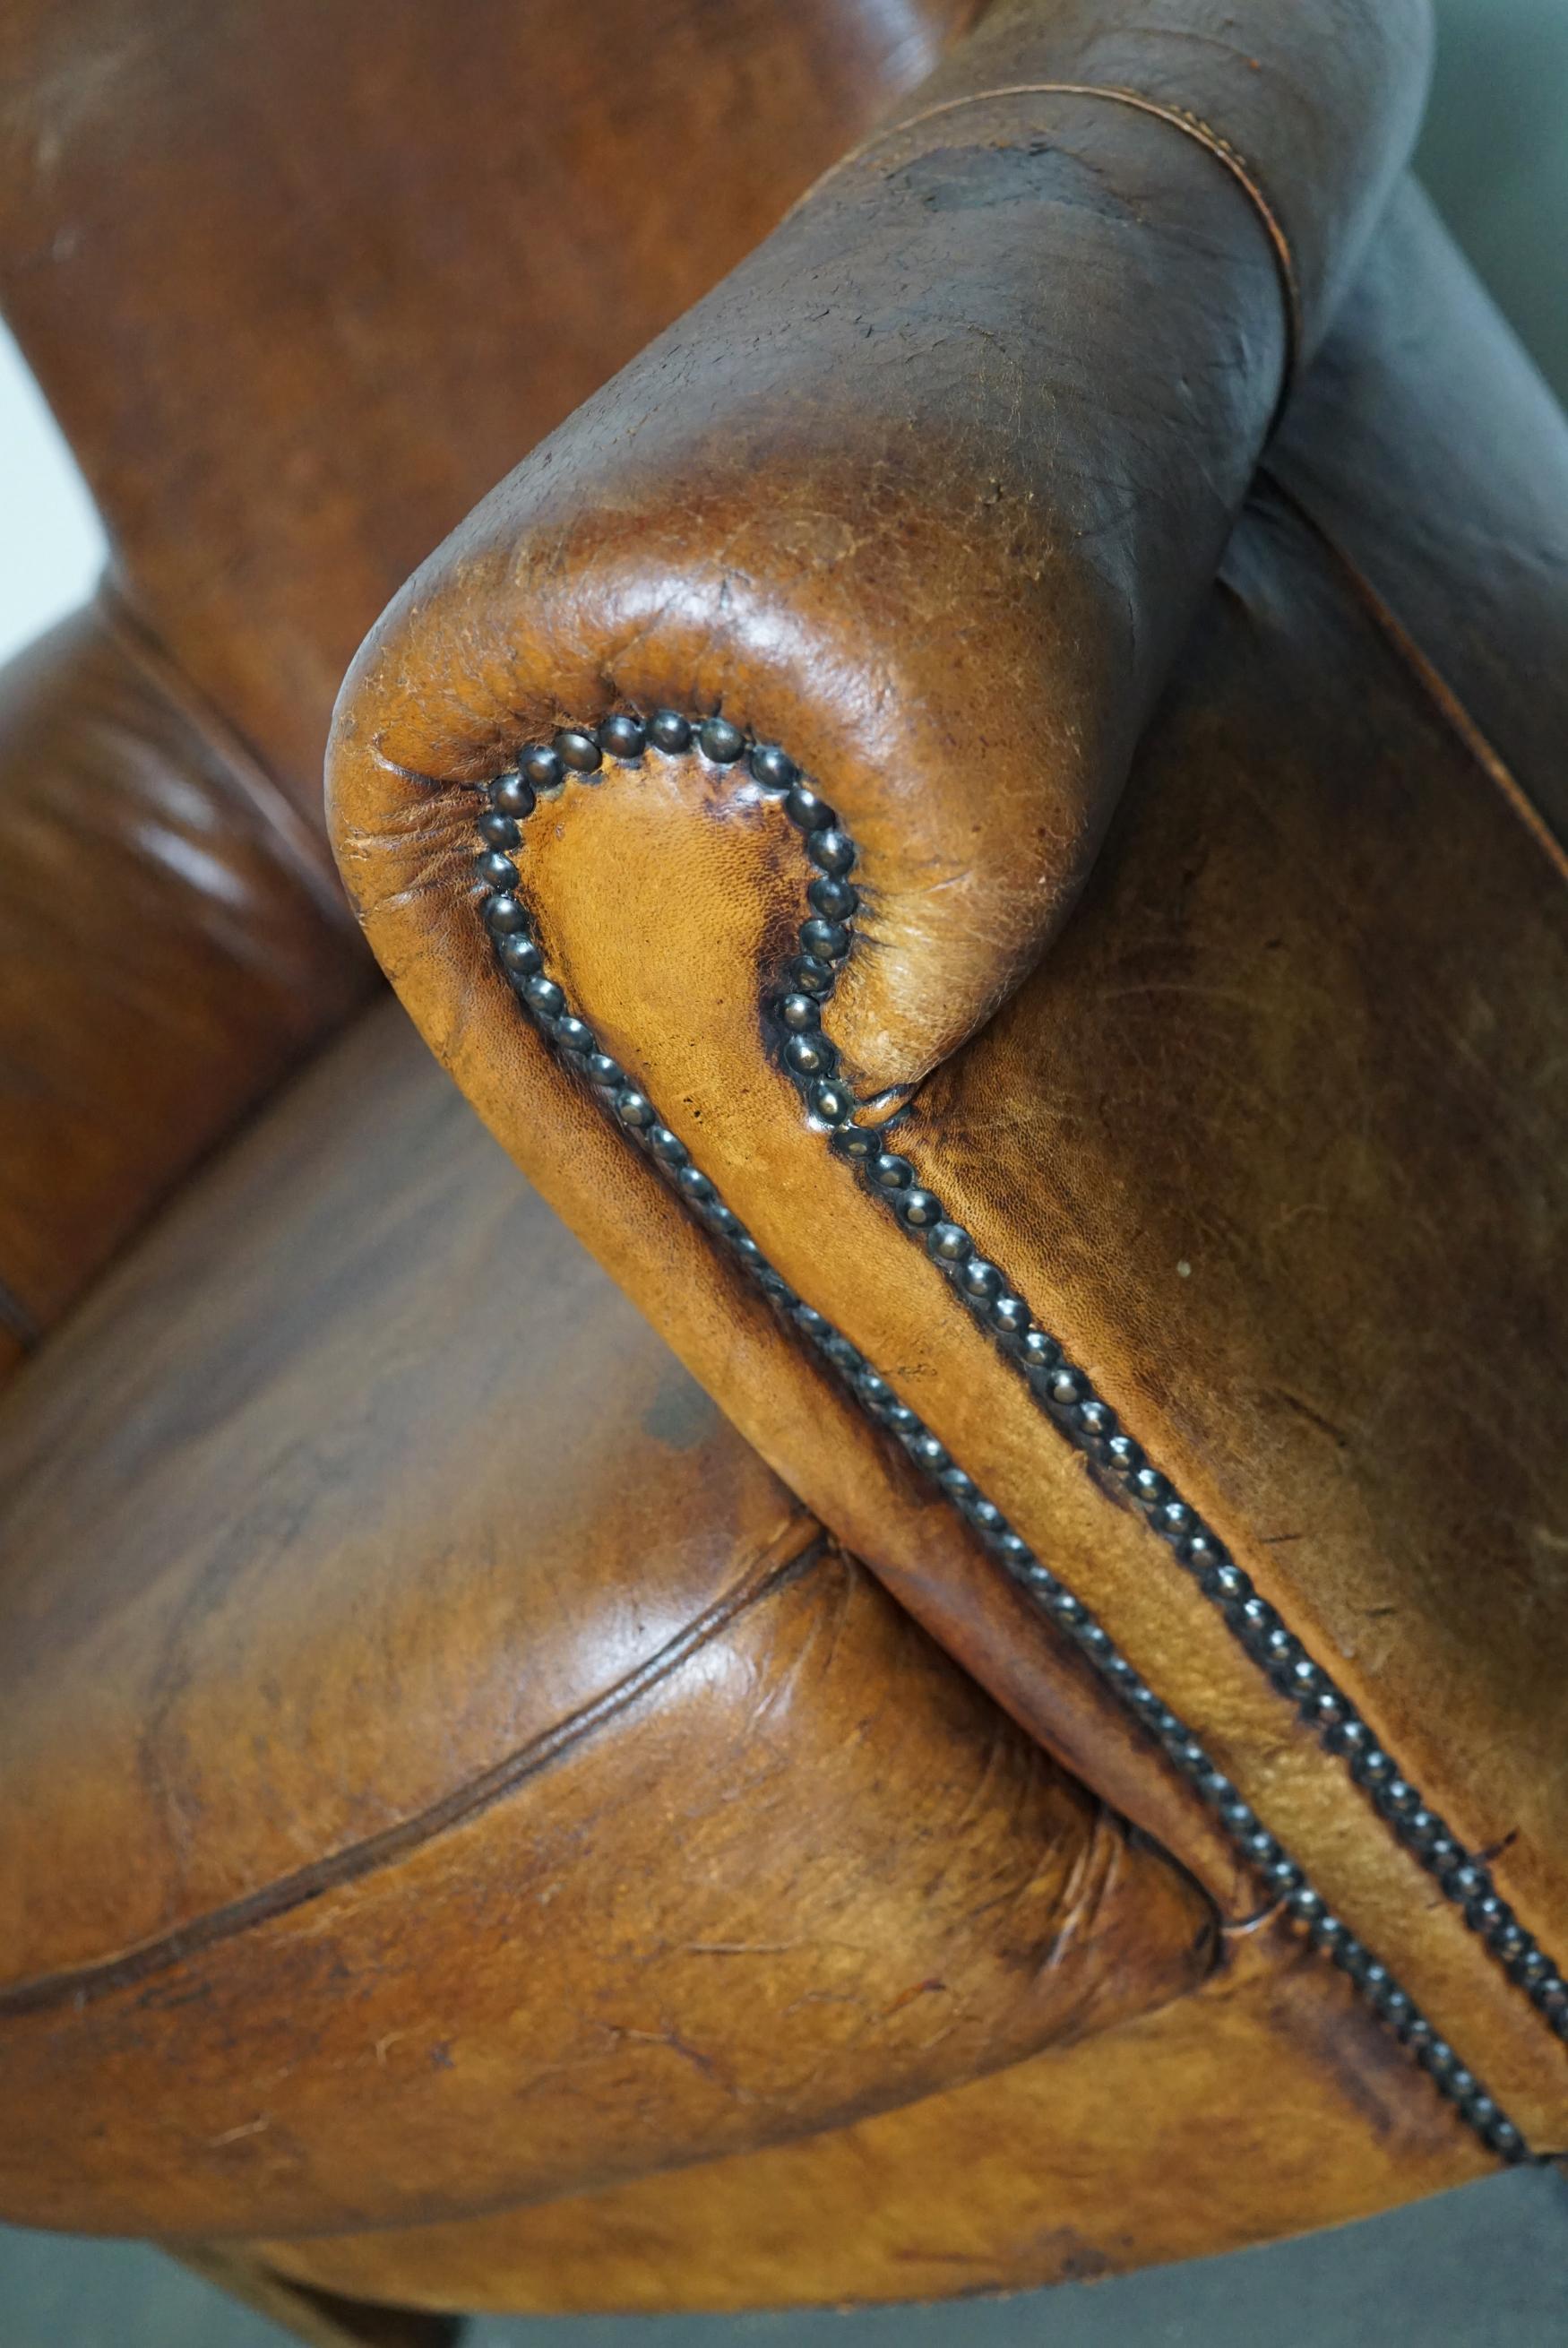 Vintage Dutch Cognac-Colored Leather Club Chair 11